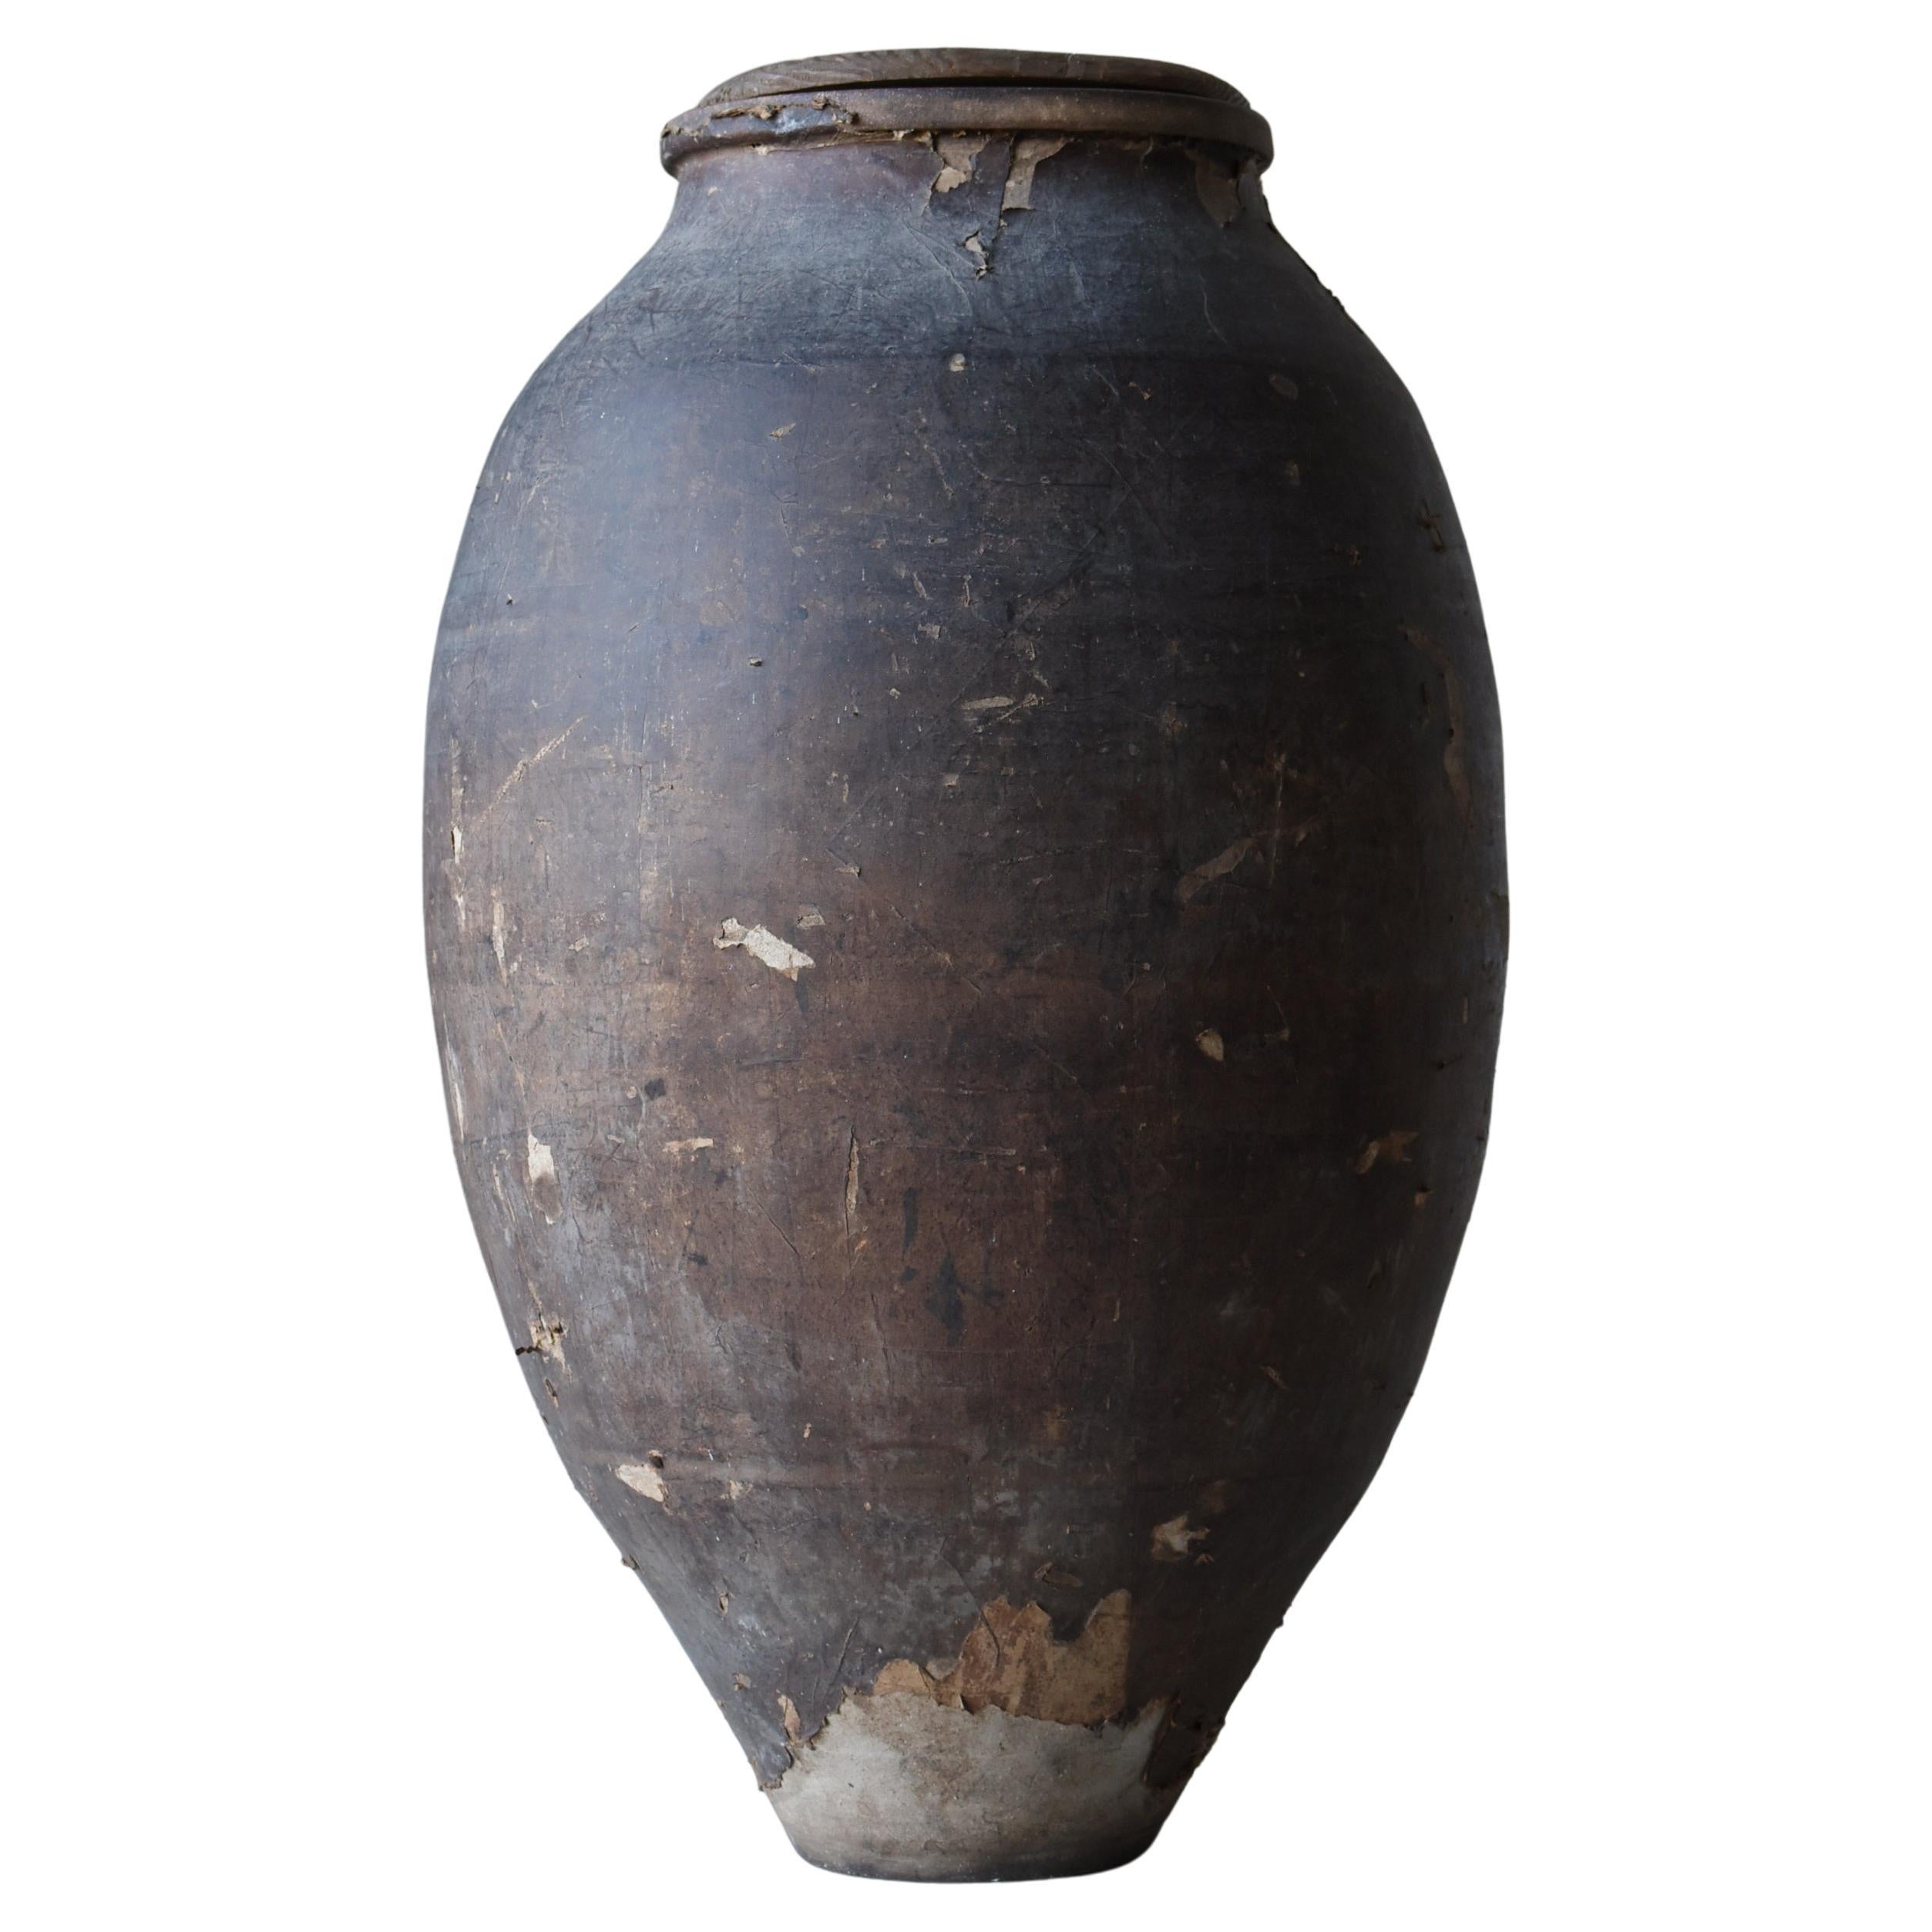 Japanese Old Pottery 1800s-1900s /Antique Tsubo Vessel Jar Flower Vase Wabisabi